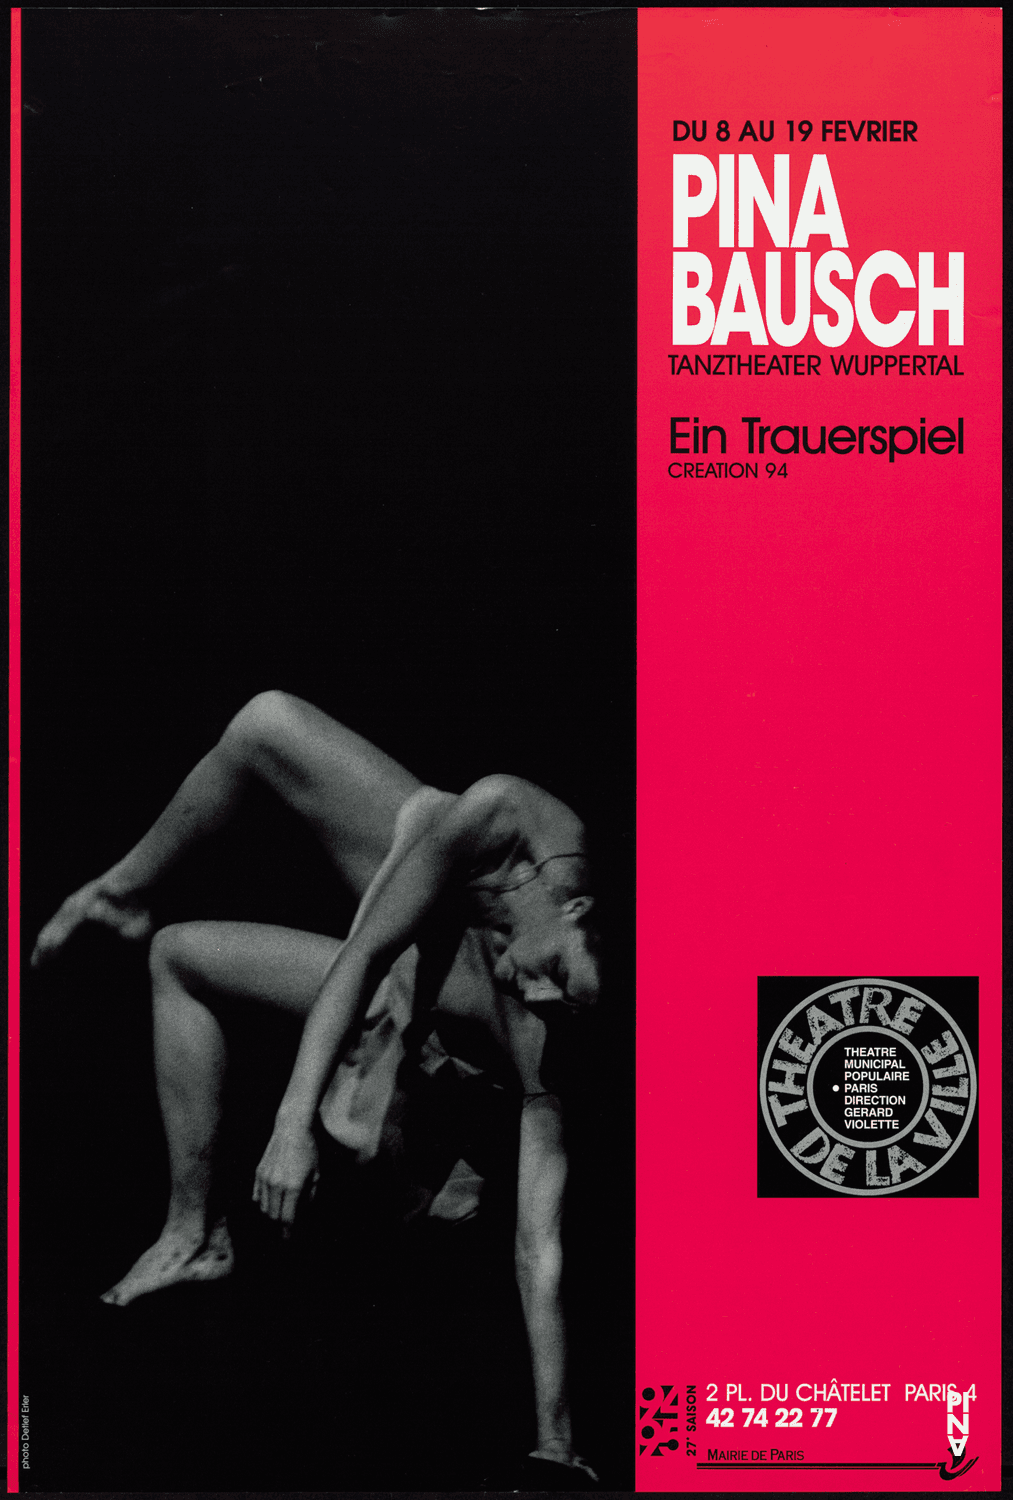 Poster for “Ein Trauerspiel” by Pina Bausch in Paris, 02/08/1995 – 02/19/1995